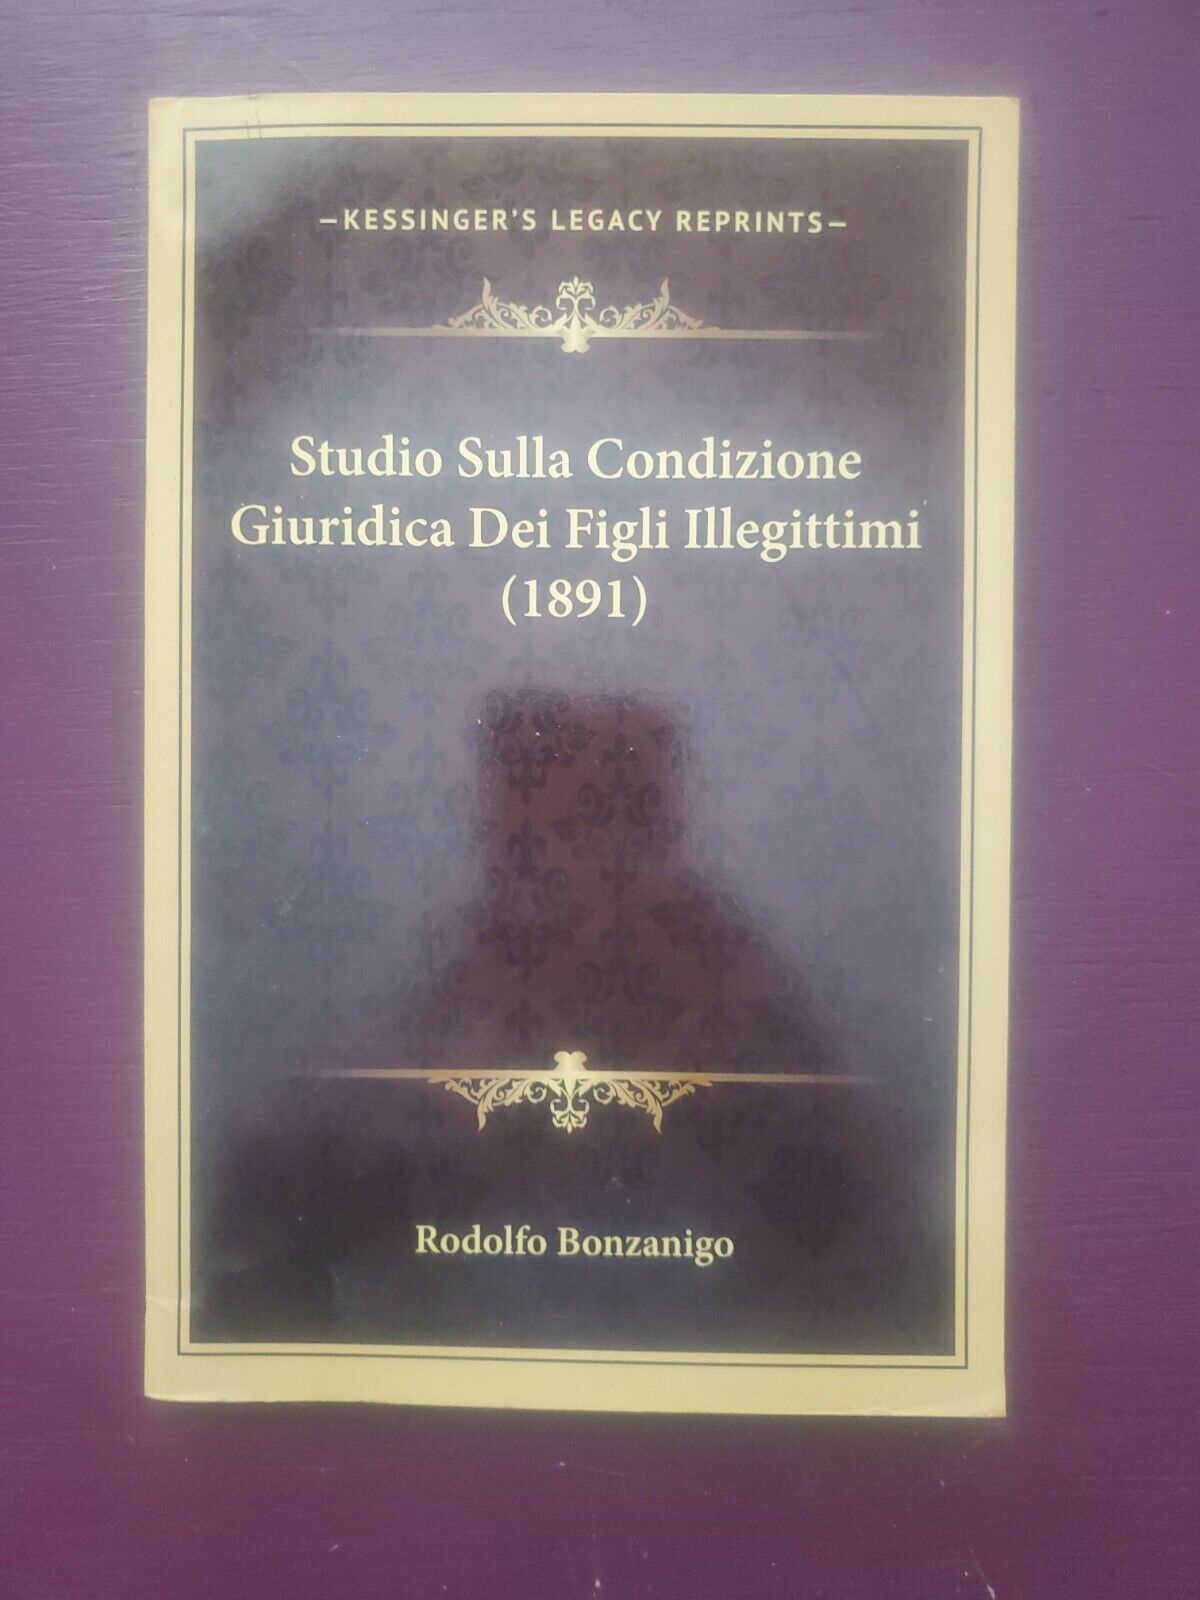 Studio Sulla Condizione Giuridica Dei Figli Illegittimi by Rodolfo Bonzanigo 